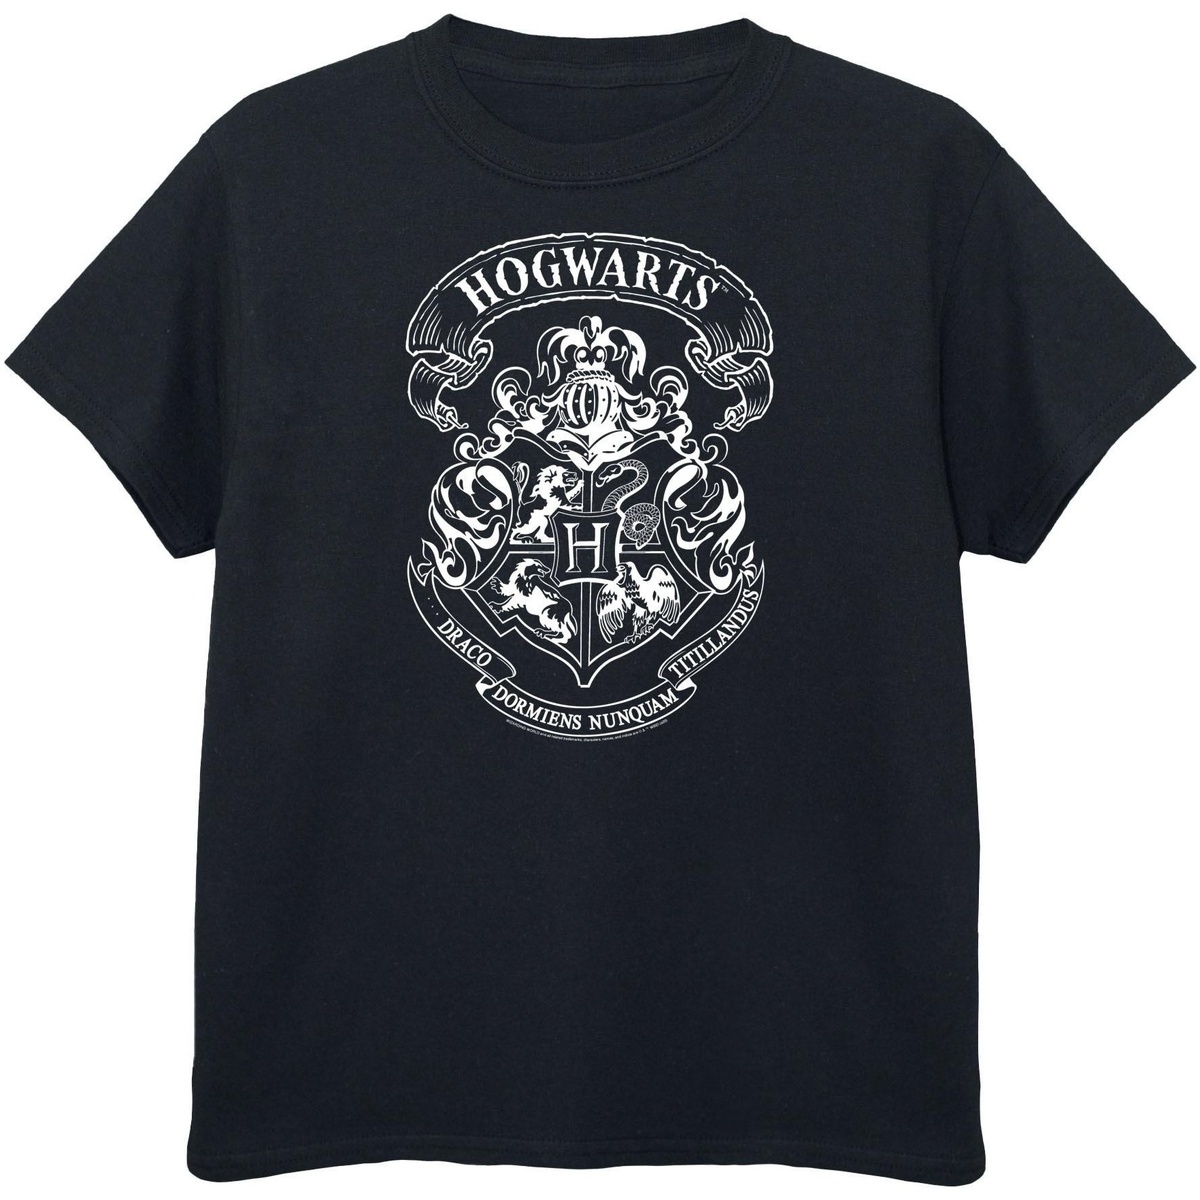 Vêtements Fille T-shirts manches longues Harry Potter BI697 Noir